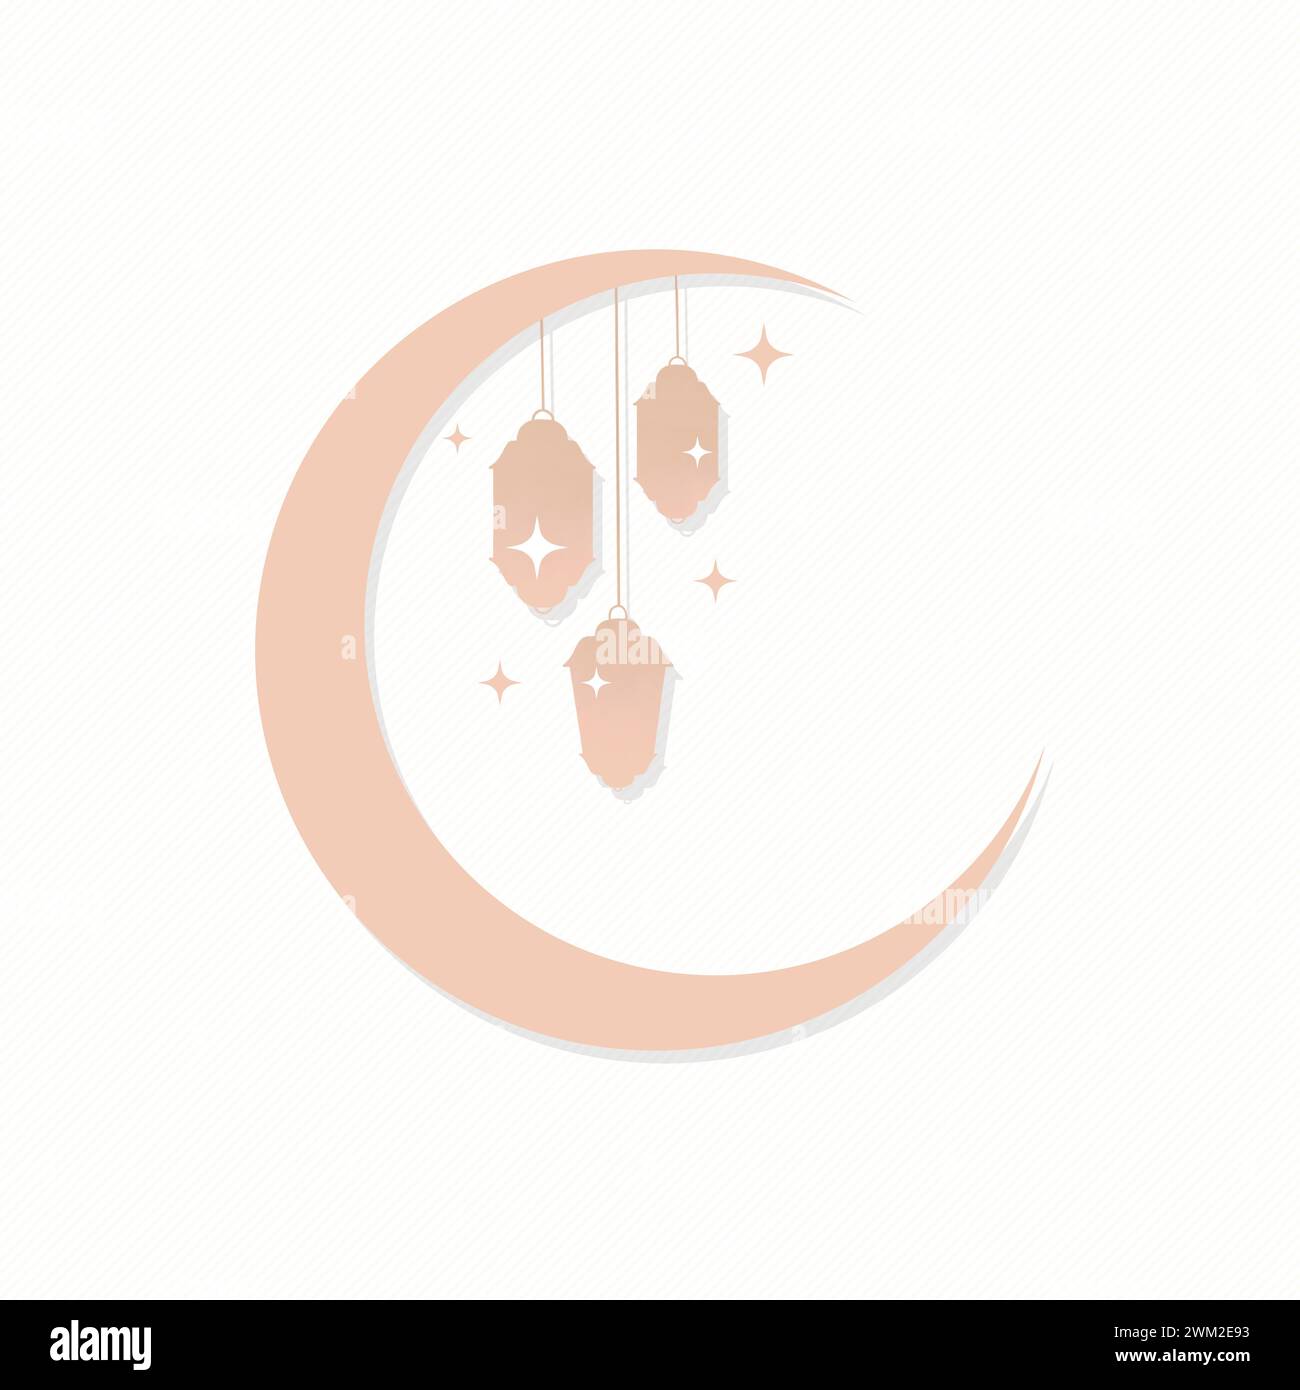 Ramadan-Grußkarte, Ramadan Kareem. Islamischer Hintergrund mit Laternen und Halbmond Stock Vektor